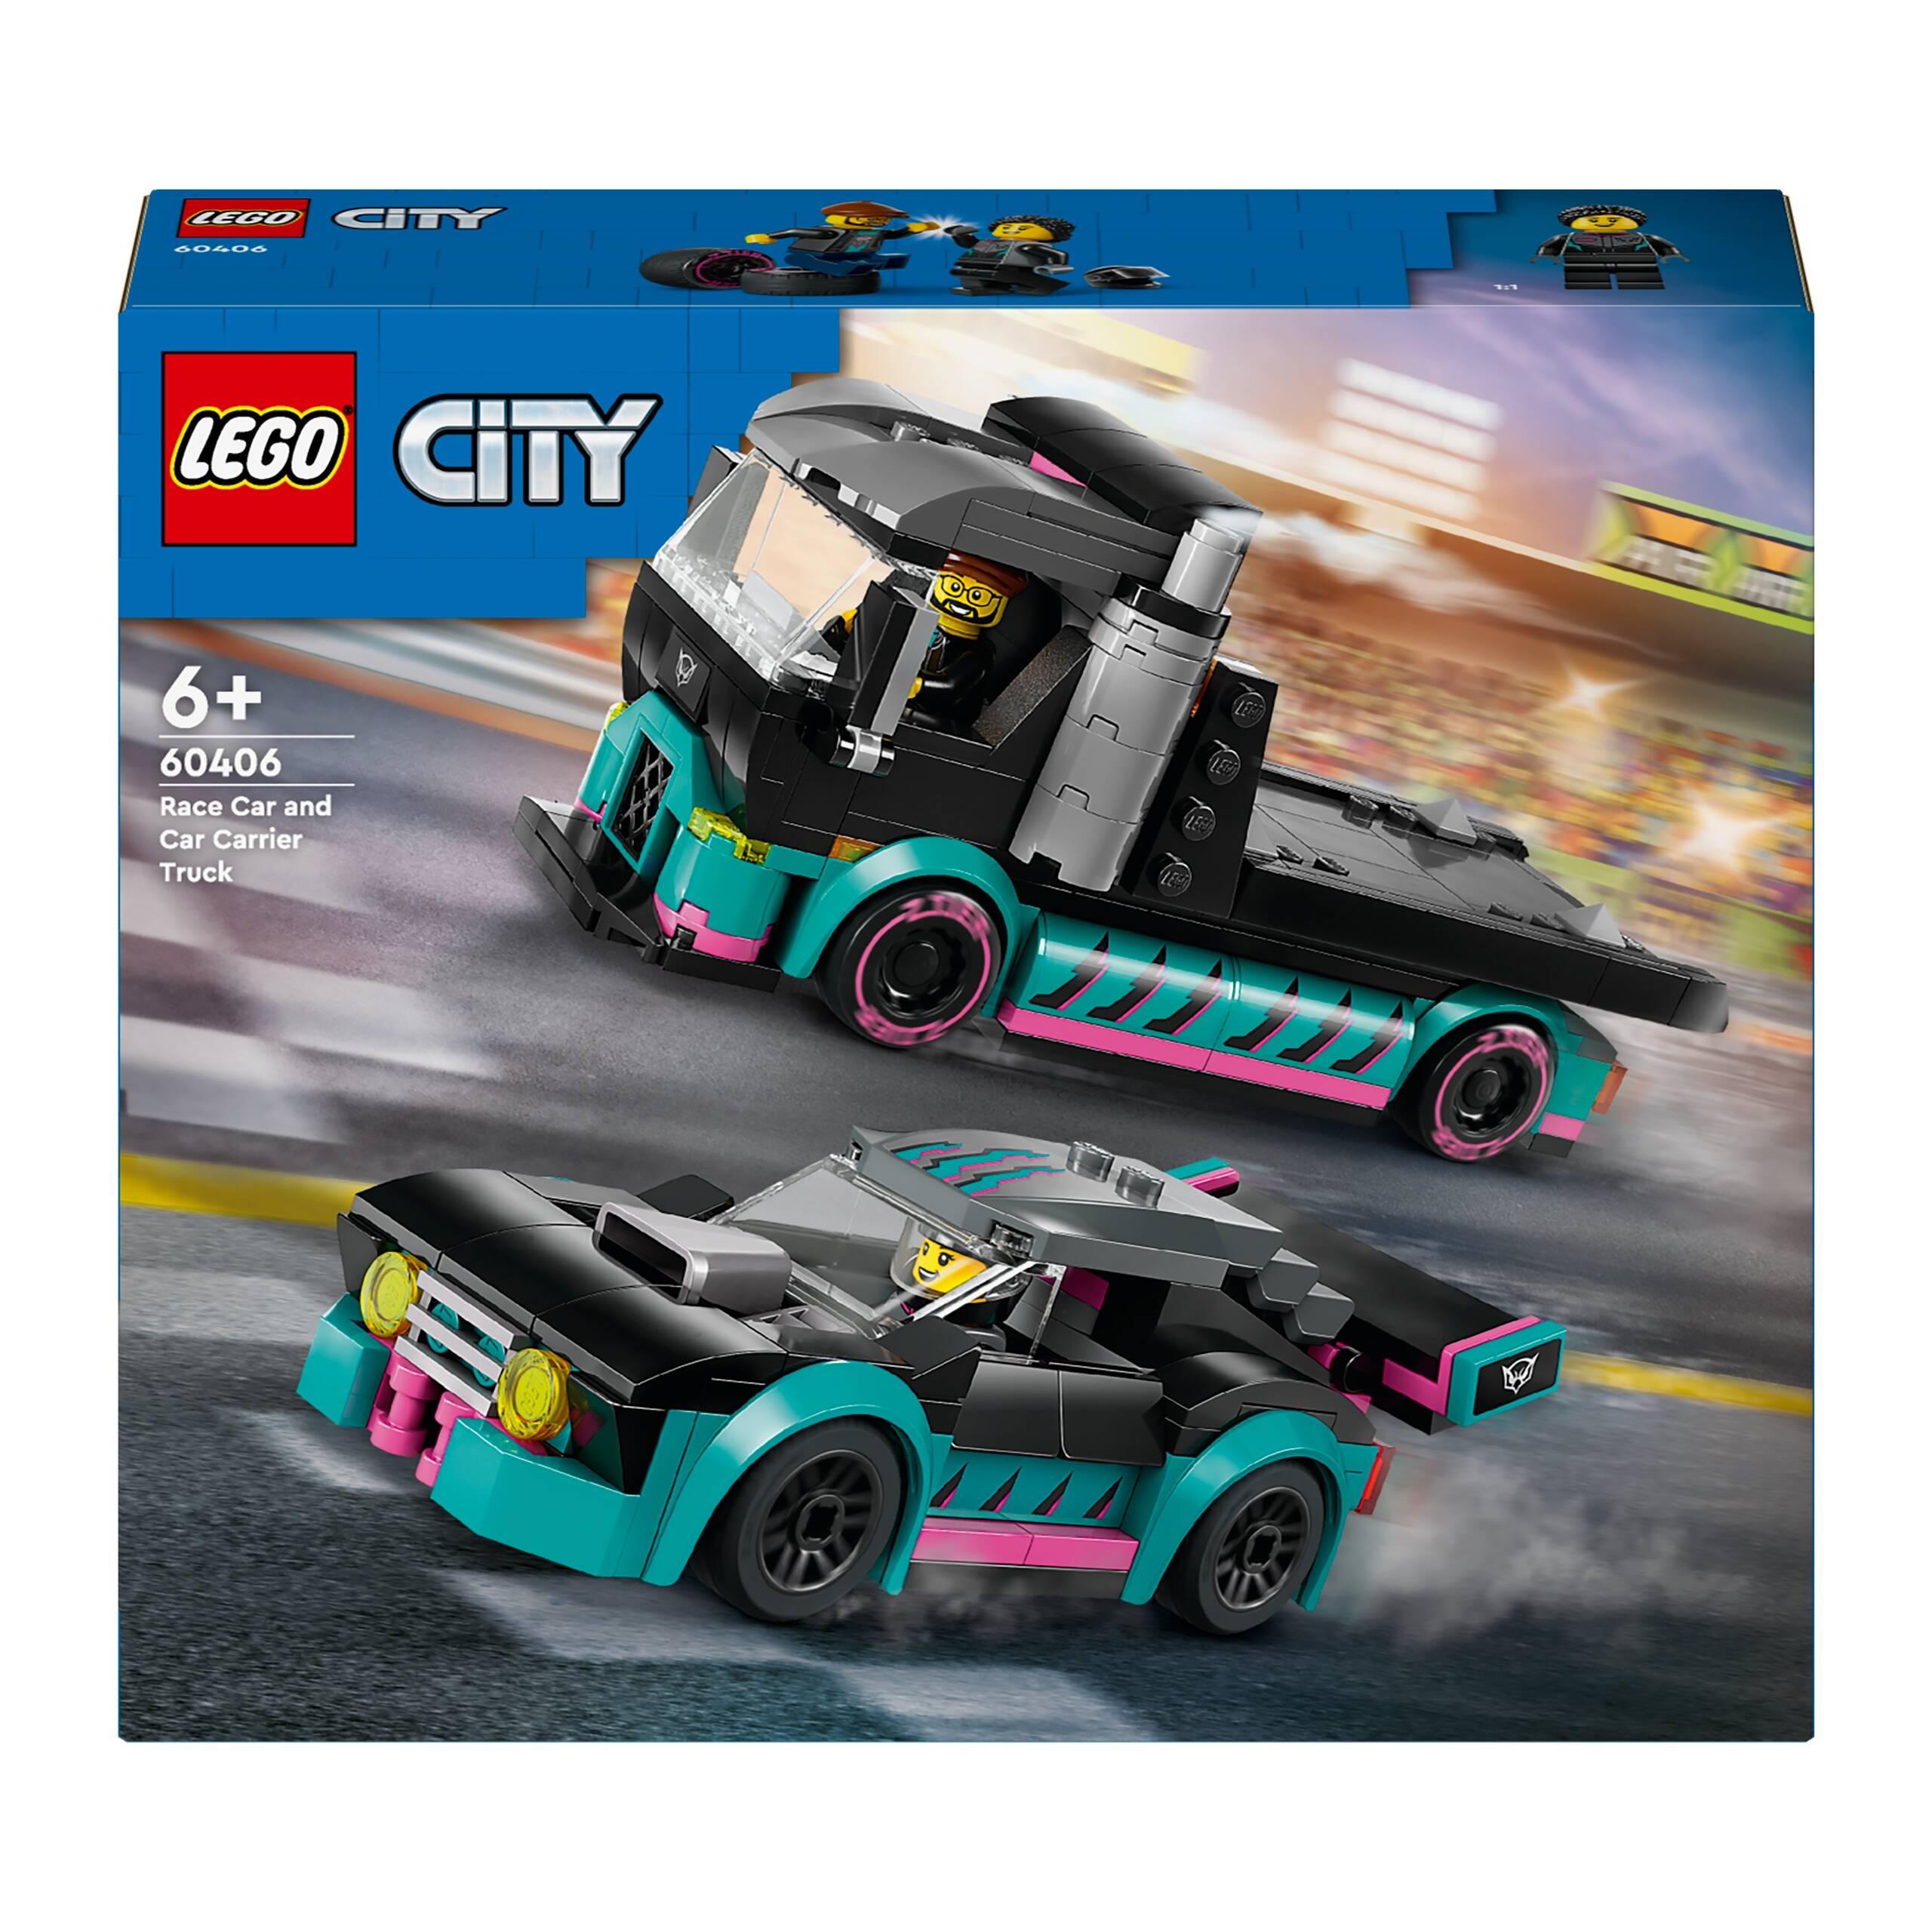 LEGO City Samochód Wyścigowy i Laweta 328el. 6+ 60406_13